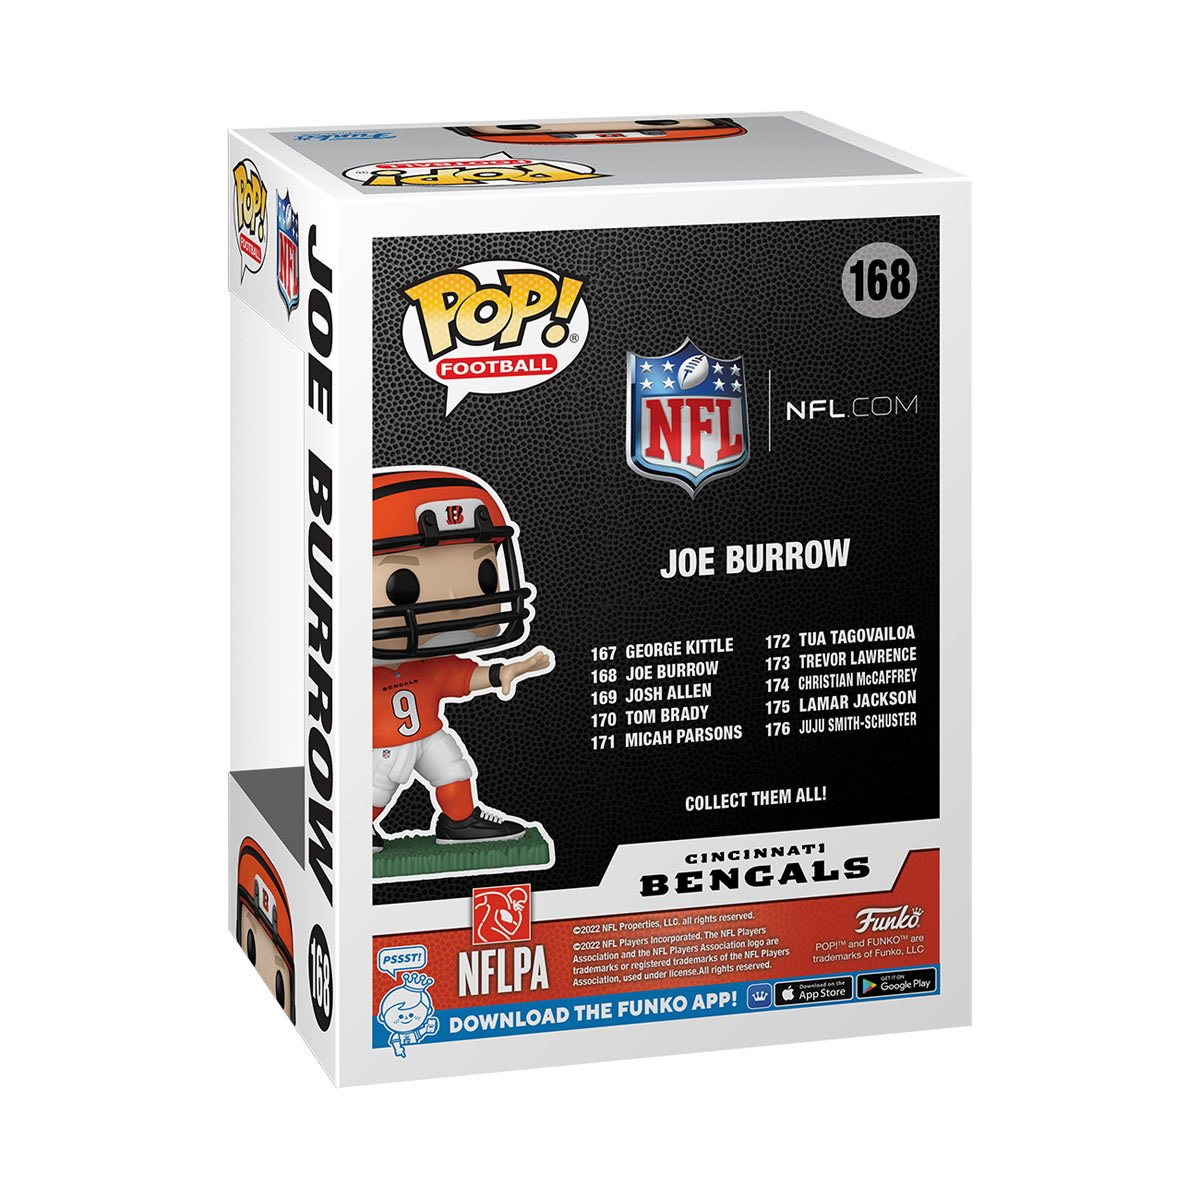 NFL_Jerseys Jersey Cincinnati''Bengals''''NFL'' Joe Burrow Orange